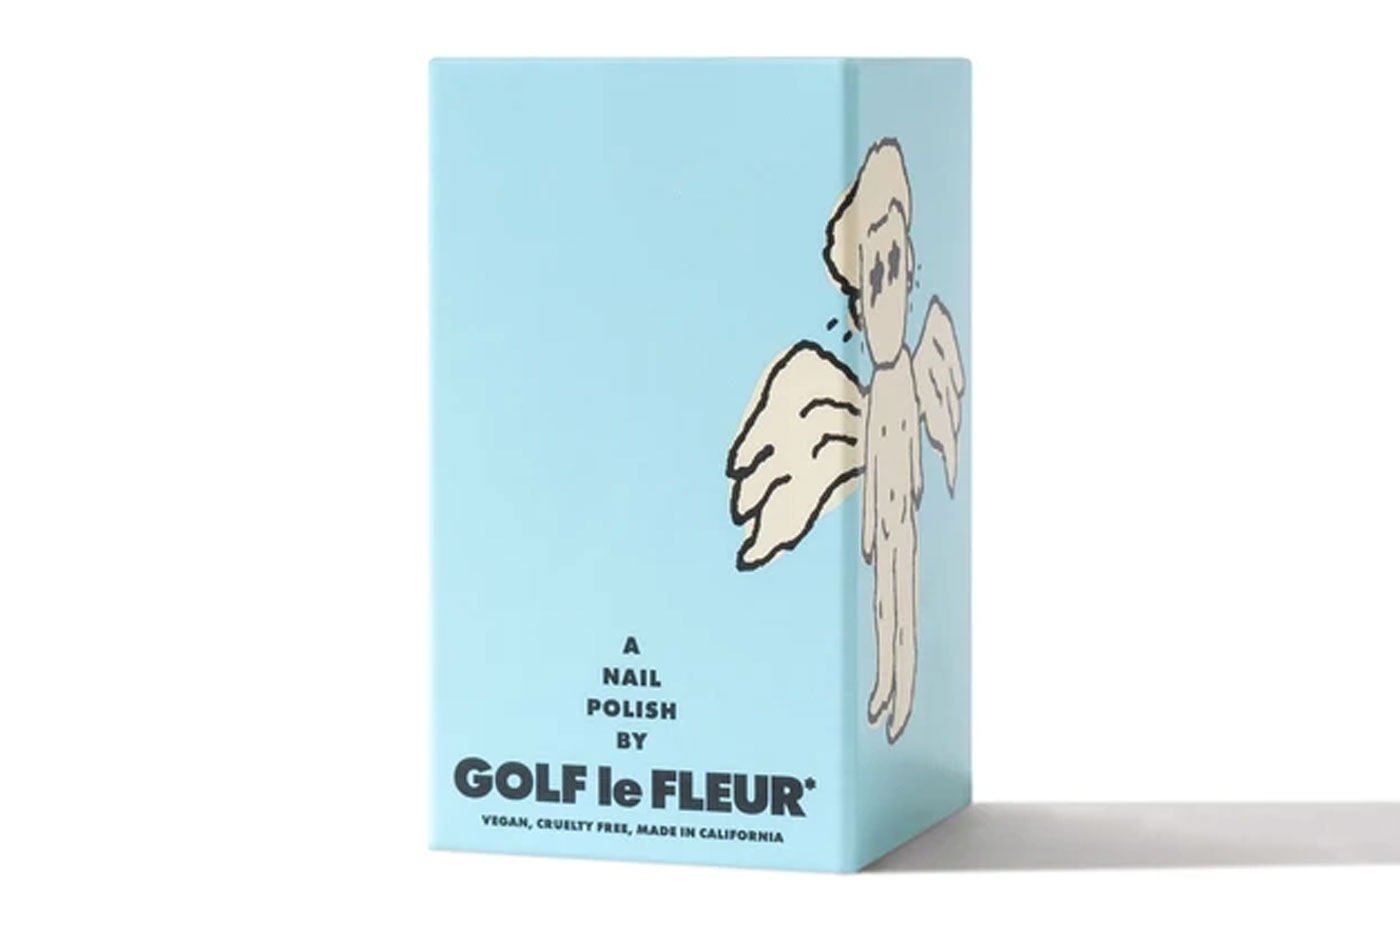 골프 르 플레르가 자체 ‘매니큐어’ 컬렉션을 출시했다, 타일러, 더 크리에이터